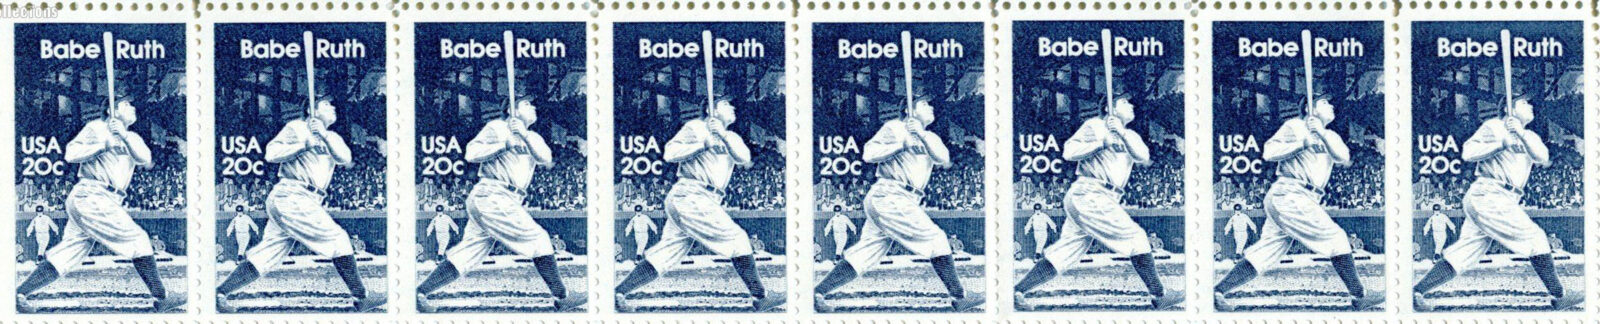 Babe Ruth, 1983 U.S. Postage Stamp header